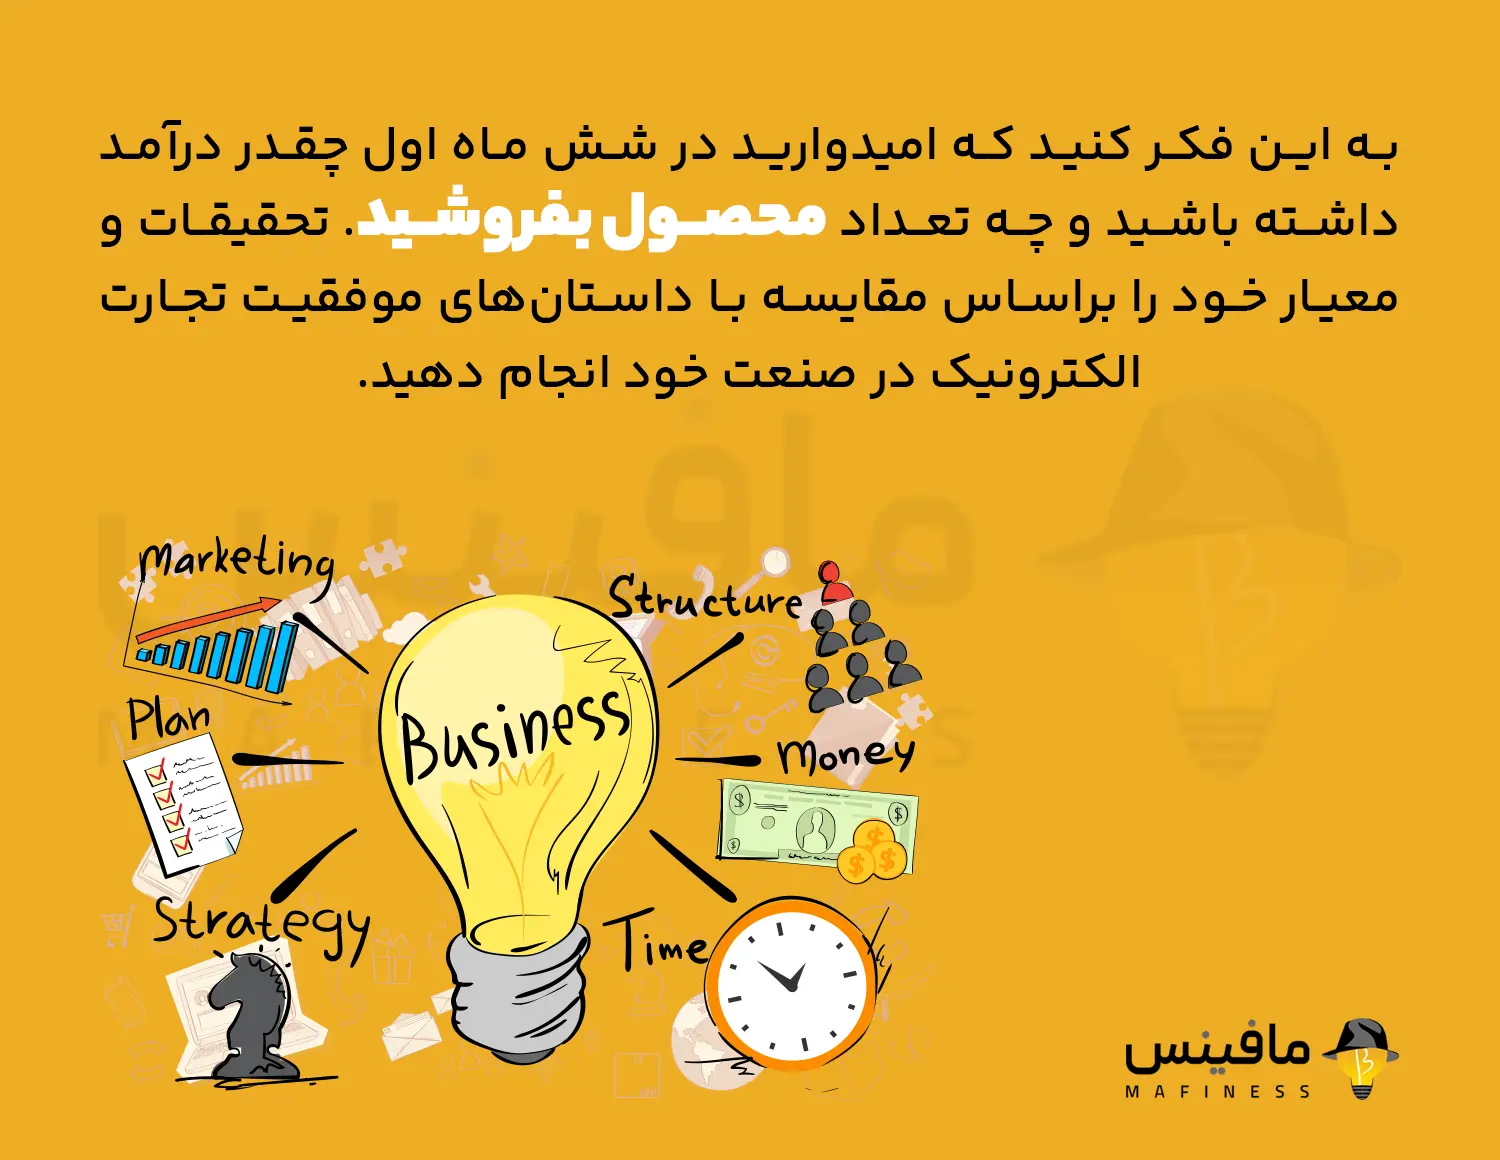 آموزش نحوه فروش آنلاین استراتژی کسب و کار - Teaching how to sell online business strategy